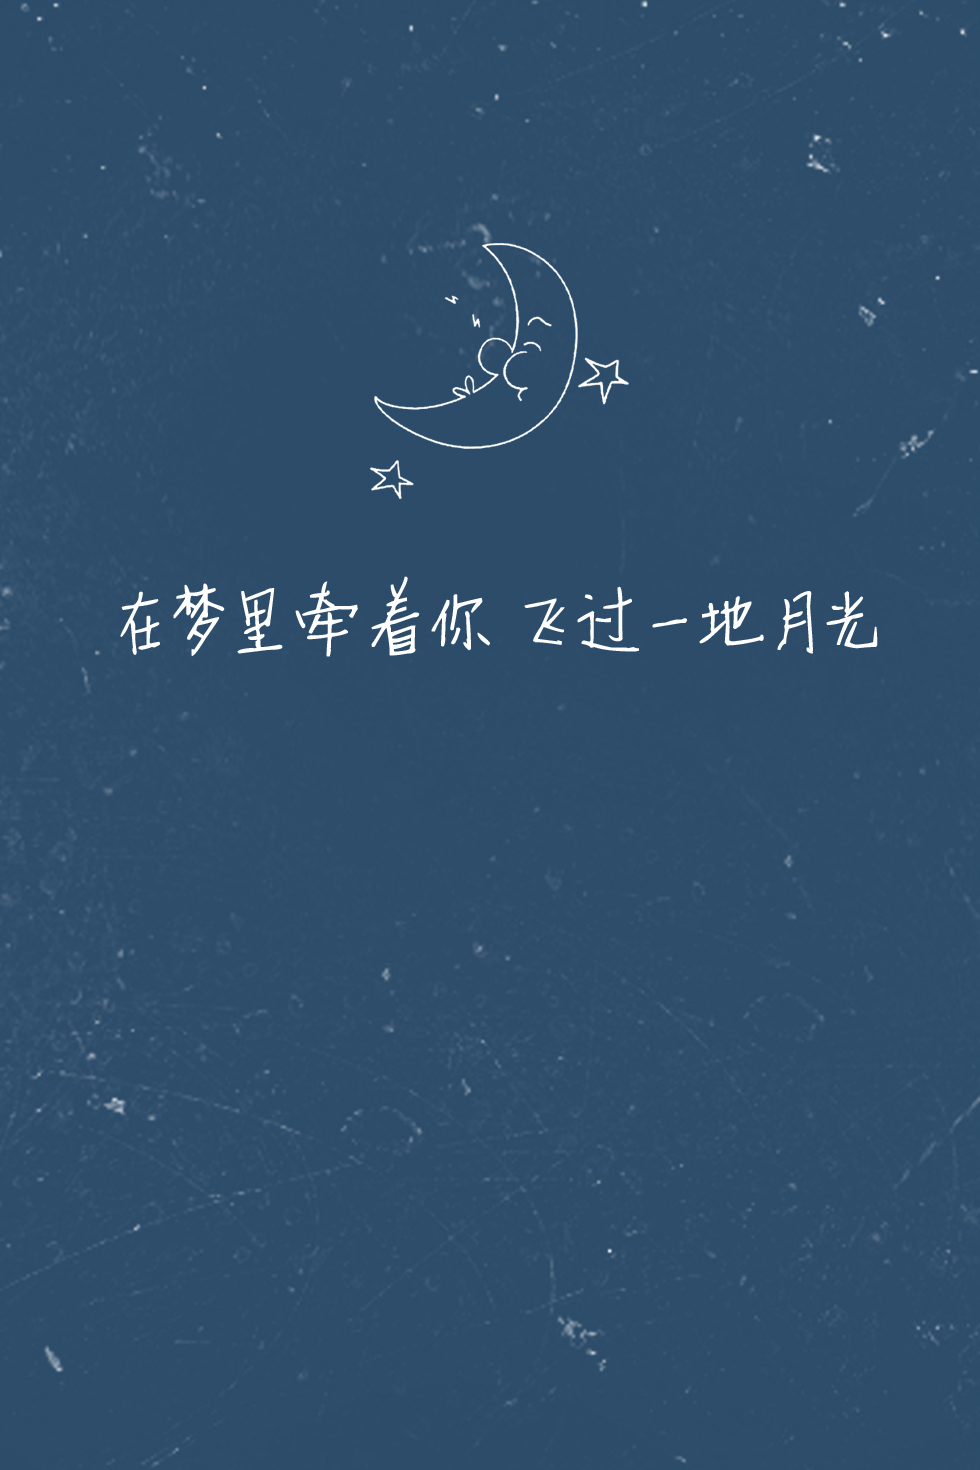 歌词壁纸#《baby(第一步)》—exo 在梦里牵着你 飞过一地月光